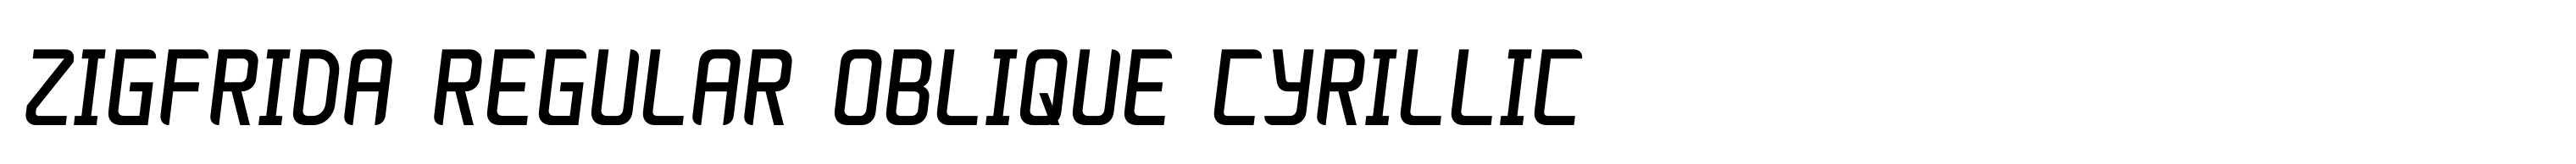 Zigfrida Regular Oblique Cyrillic